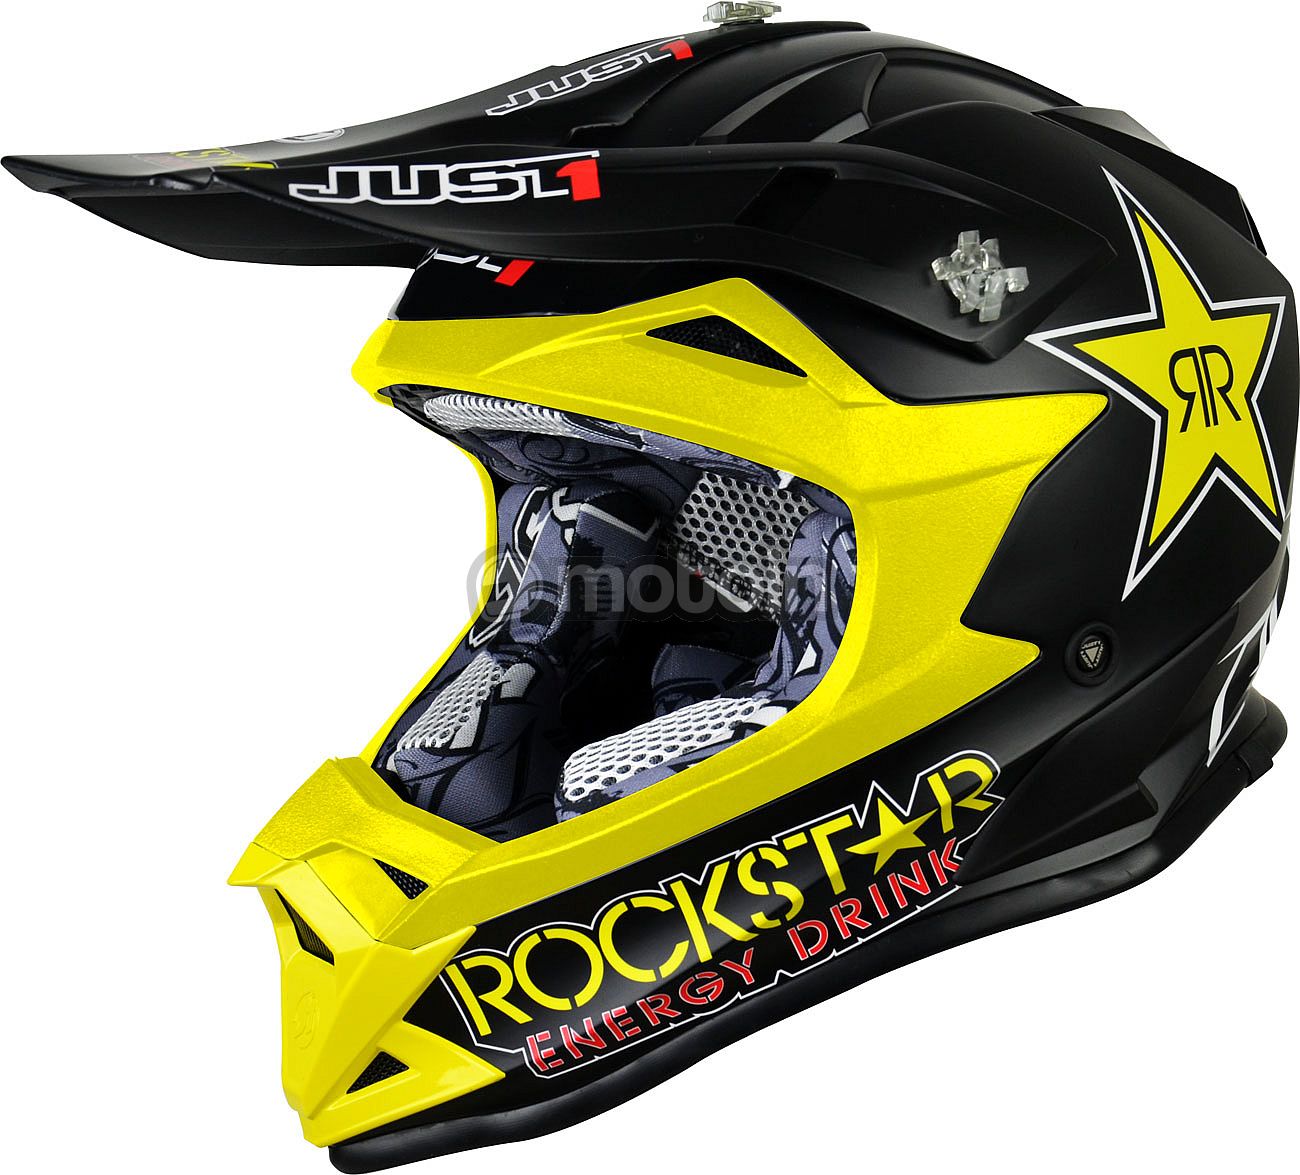 Just1 J32 Pro Rockstar, Motocrosshelm Kinder